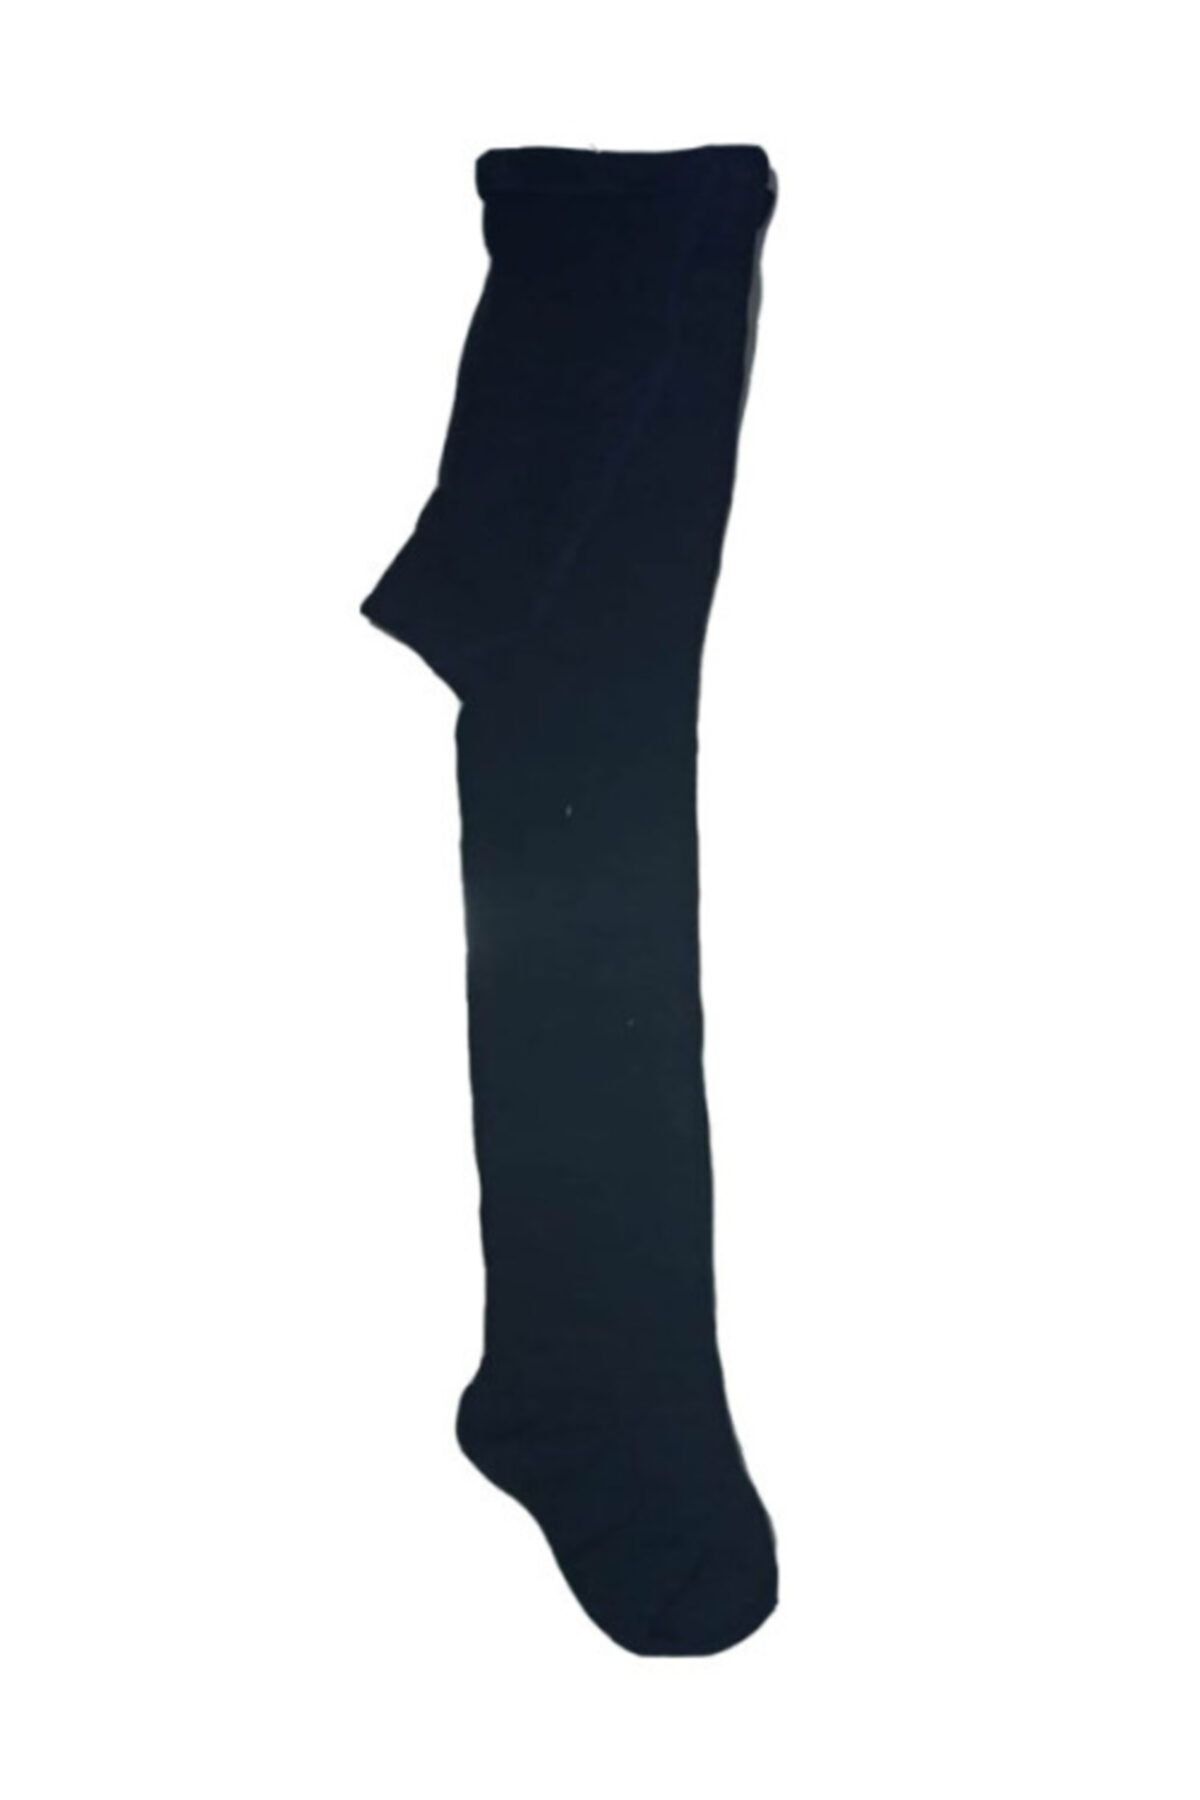 Tuğba Kız Çocuk Külotlu Çorap Lacivert Mevsimlik Kalın 5-6 Yaş 100cm